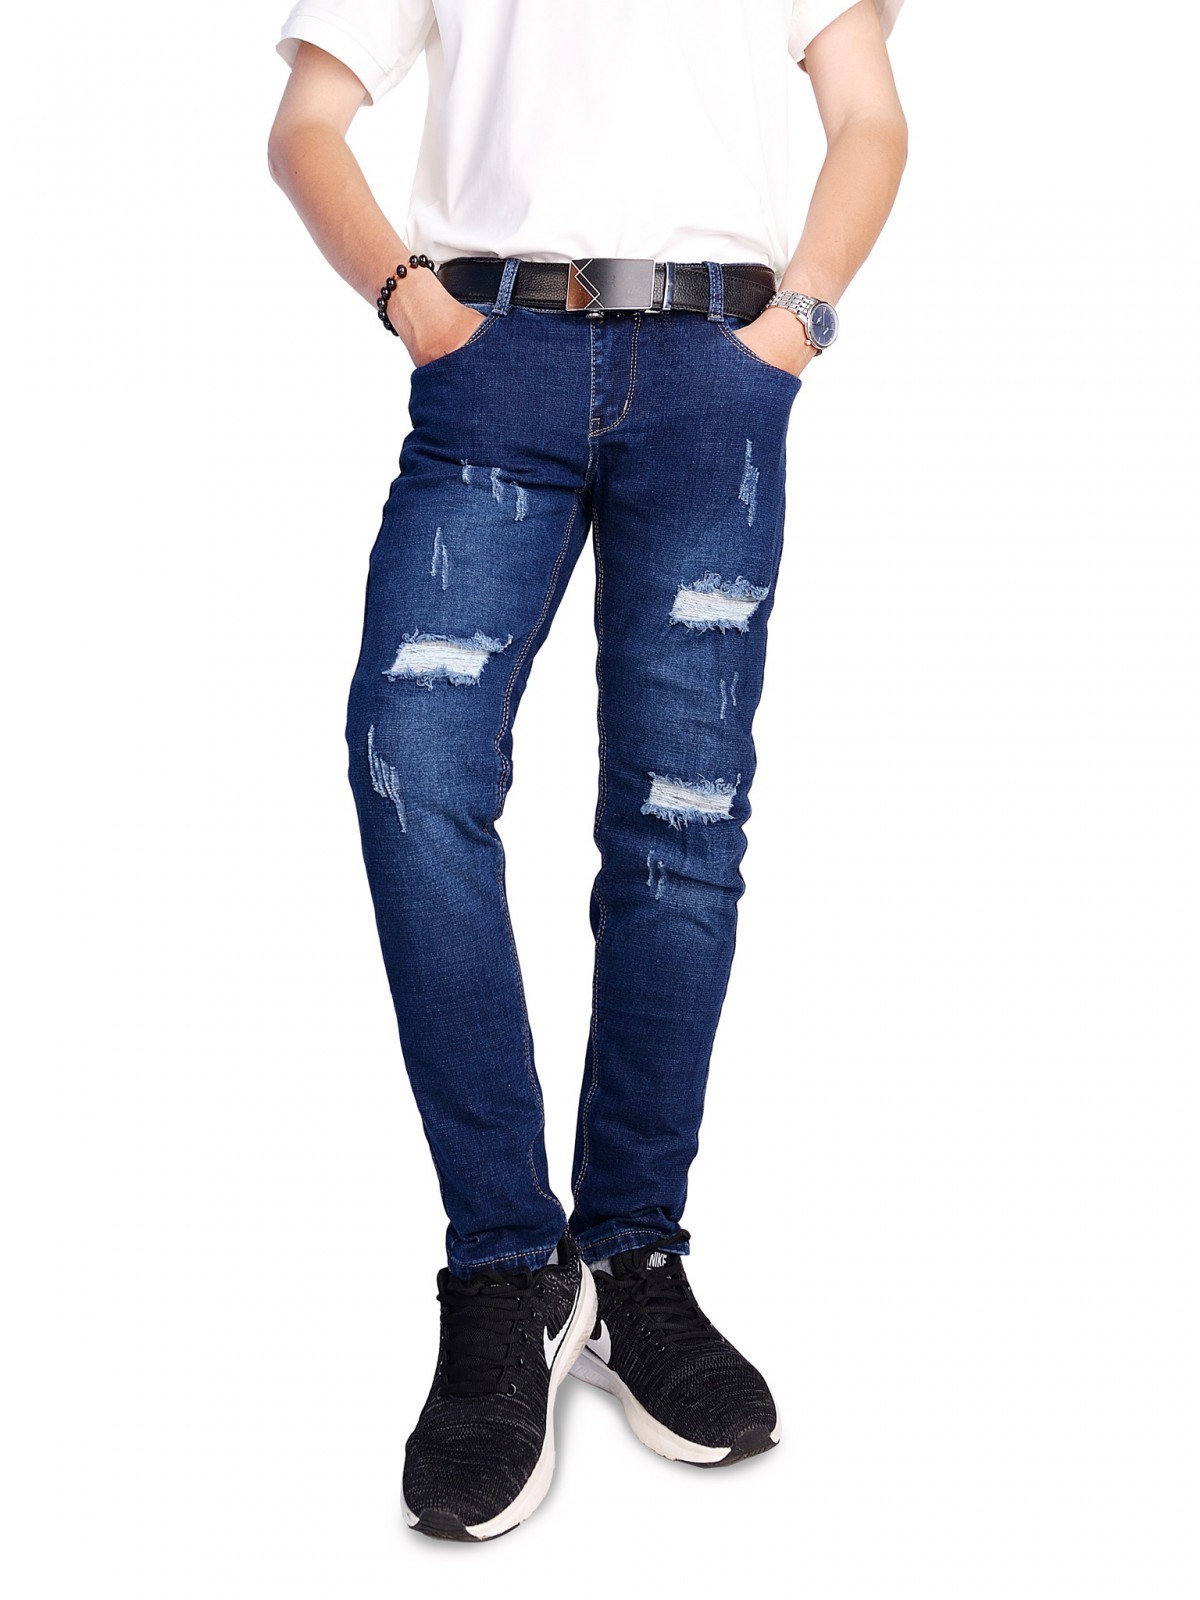 Những kiểu phối quần jeans nam rách gối phù hợp nhất